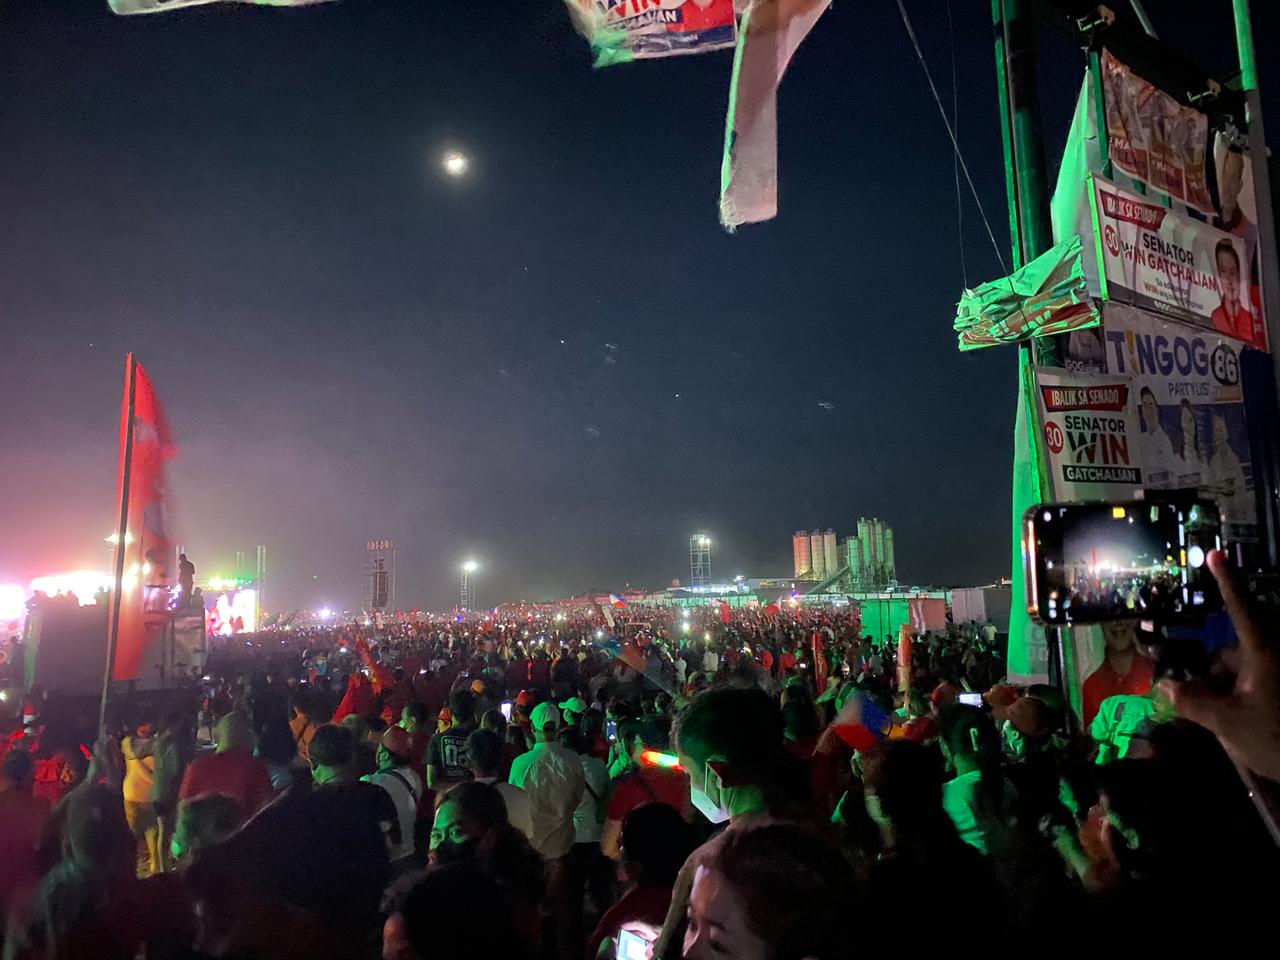 Eine riesige Menschenmenge steht zwischen roten Fahnen und Wahlkplakaten in der Nacht auf einem weitläufigen Platz von Flutlicht angestrahlt.